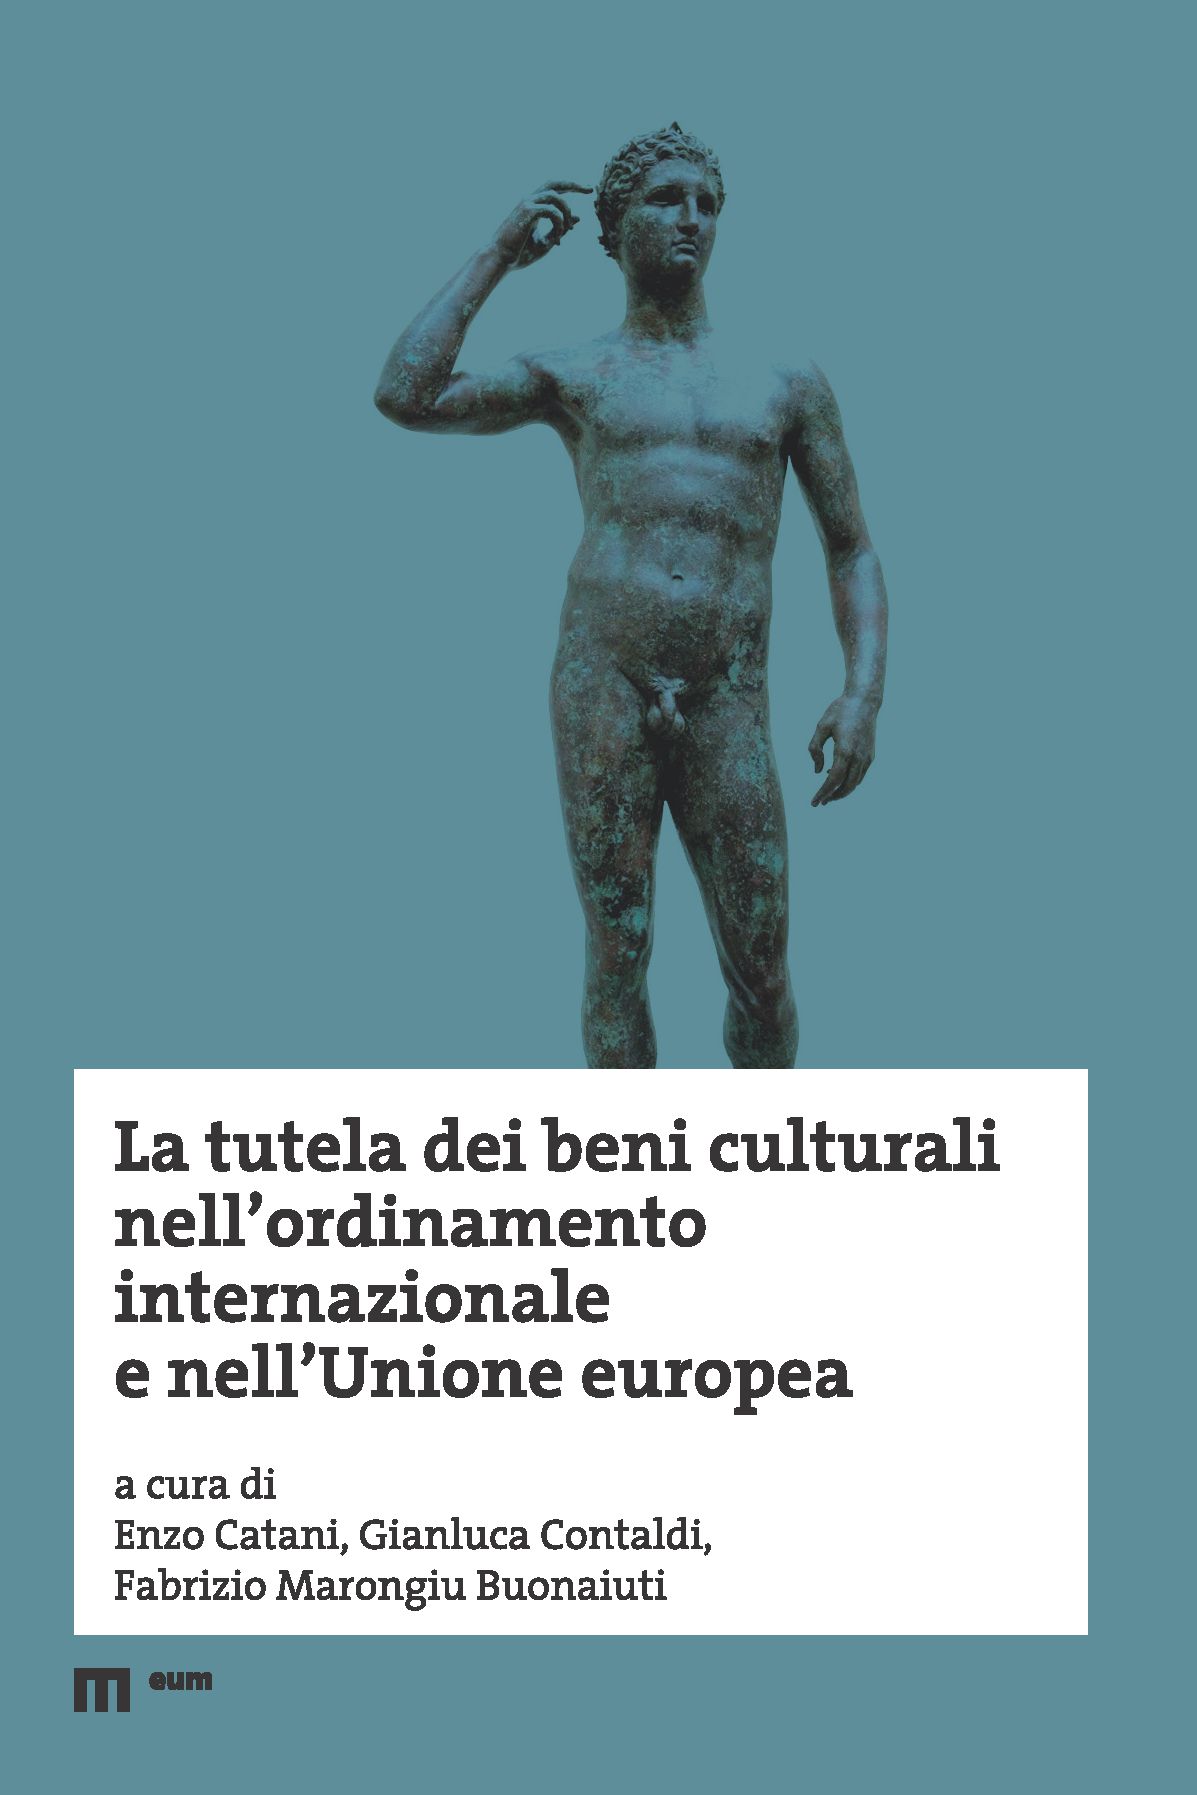 Pubblicato on line il volume "La tutela dei beni culturali nell'ordinamento internazionale e nell'Unione europea"   